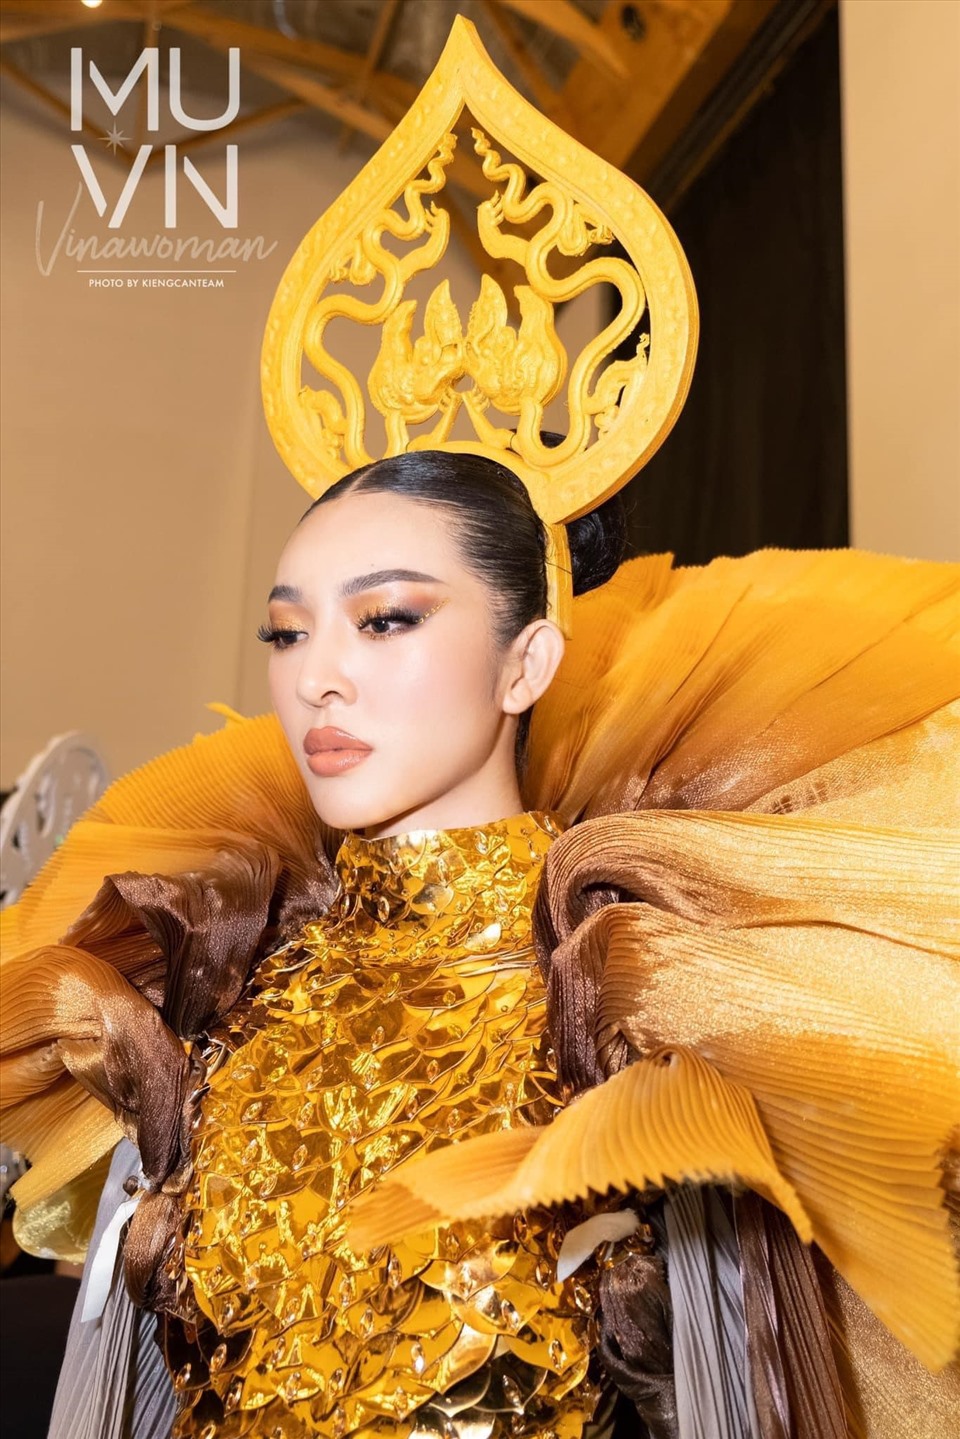 Cuộc thi Hoa hậu Hoàn vũ Việt Nam 2022 đang bước vào chặng cuối, các thí sinh nổi bật cũng bắt đầu lộ diện. Nhưng chưa bao giờ cuộc đua chạm đến vương miện lại khốc liệt đến như vậy, bởi năm nay cuộc thi quy tụ dàn “chiến binh khủng”, ai nấy cũng đều đầu tư nghiêm túc nhất.